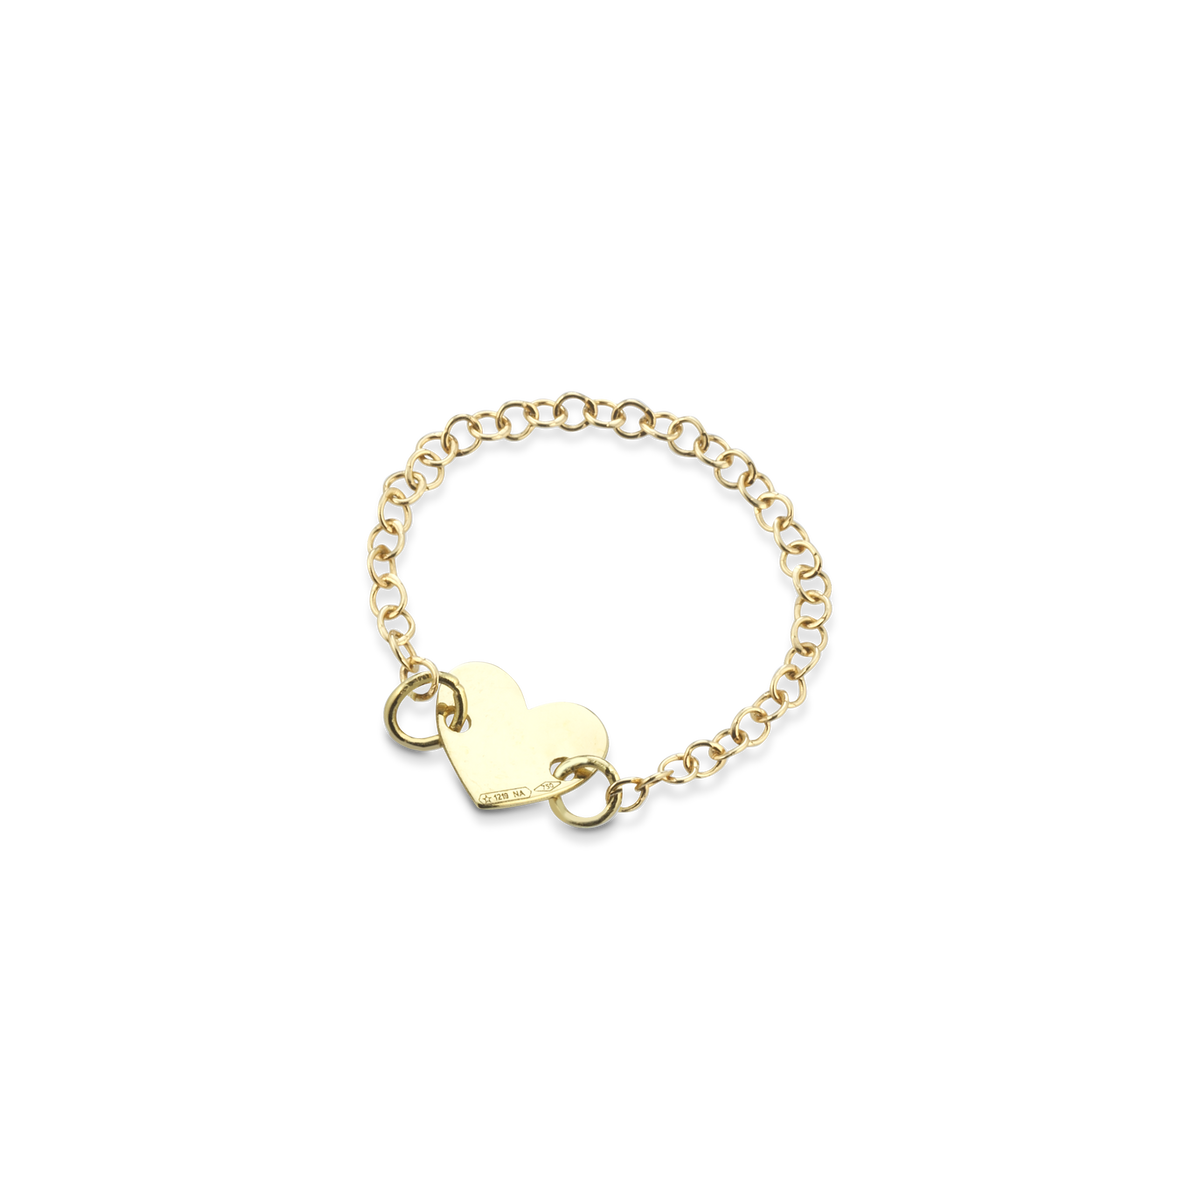 Anello in oro con catena morbida e centrale a forma di cuore